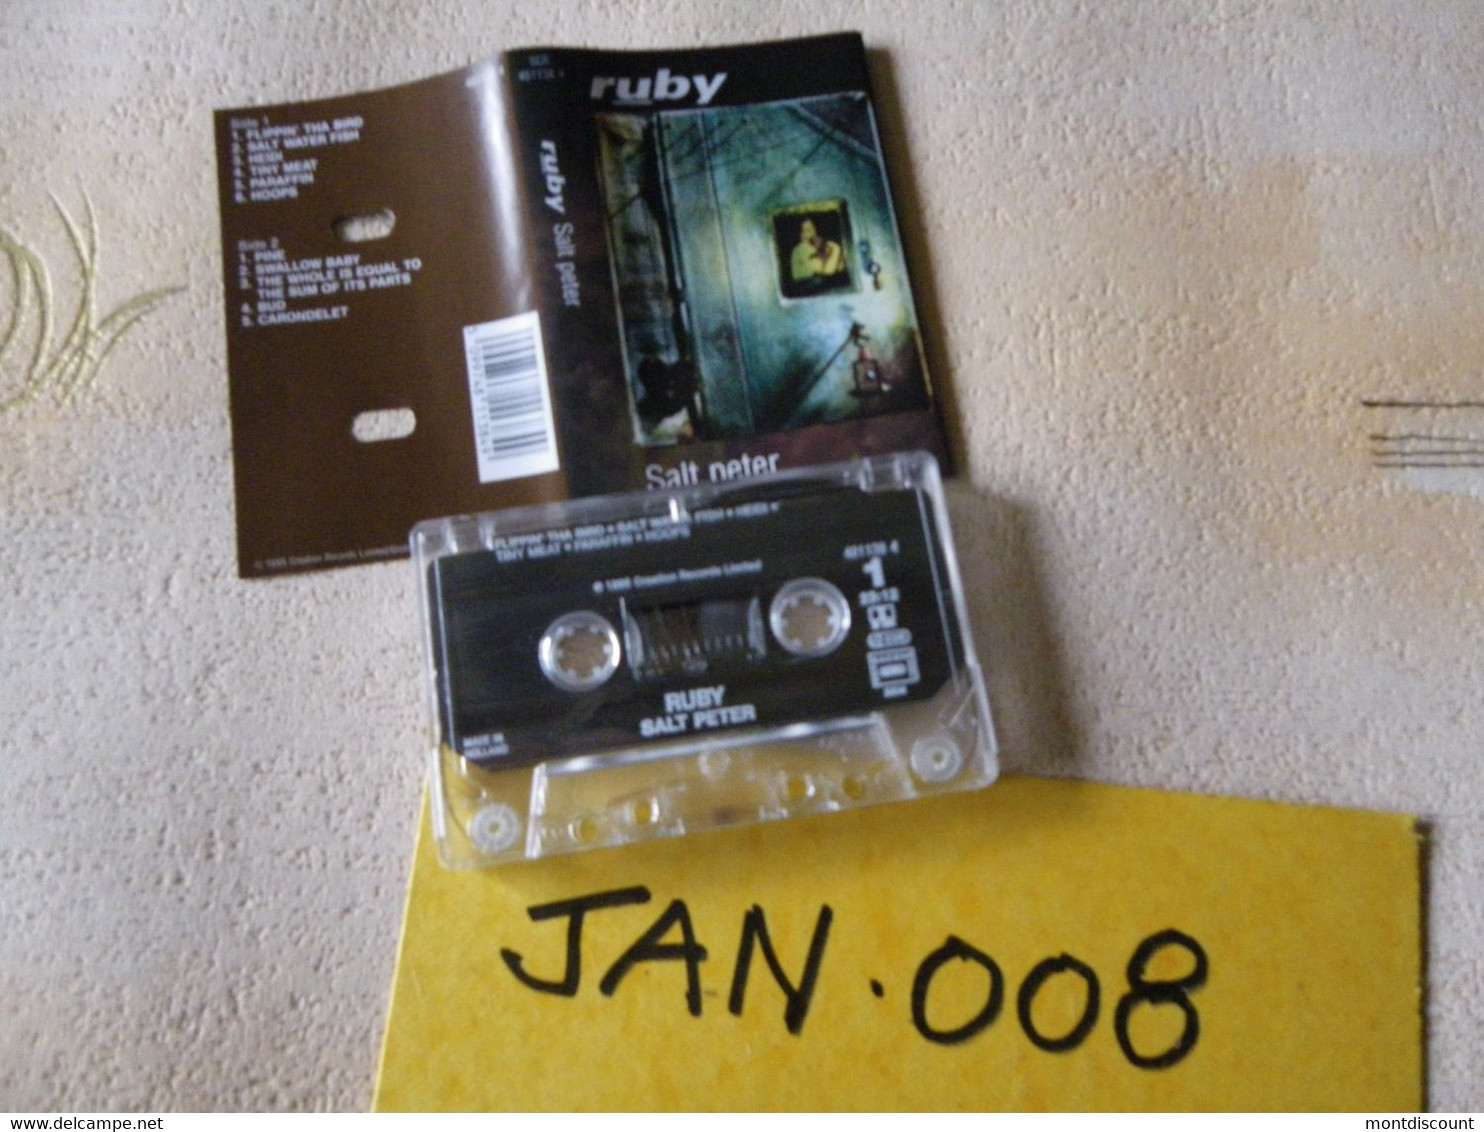 RUBY K7 AUDIO VOIR PHOTO...ET REGARDEZ LES AUTRES (PLUSIEURS) (JAN 008) - Cassettes Audio